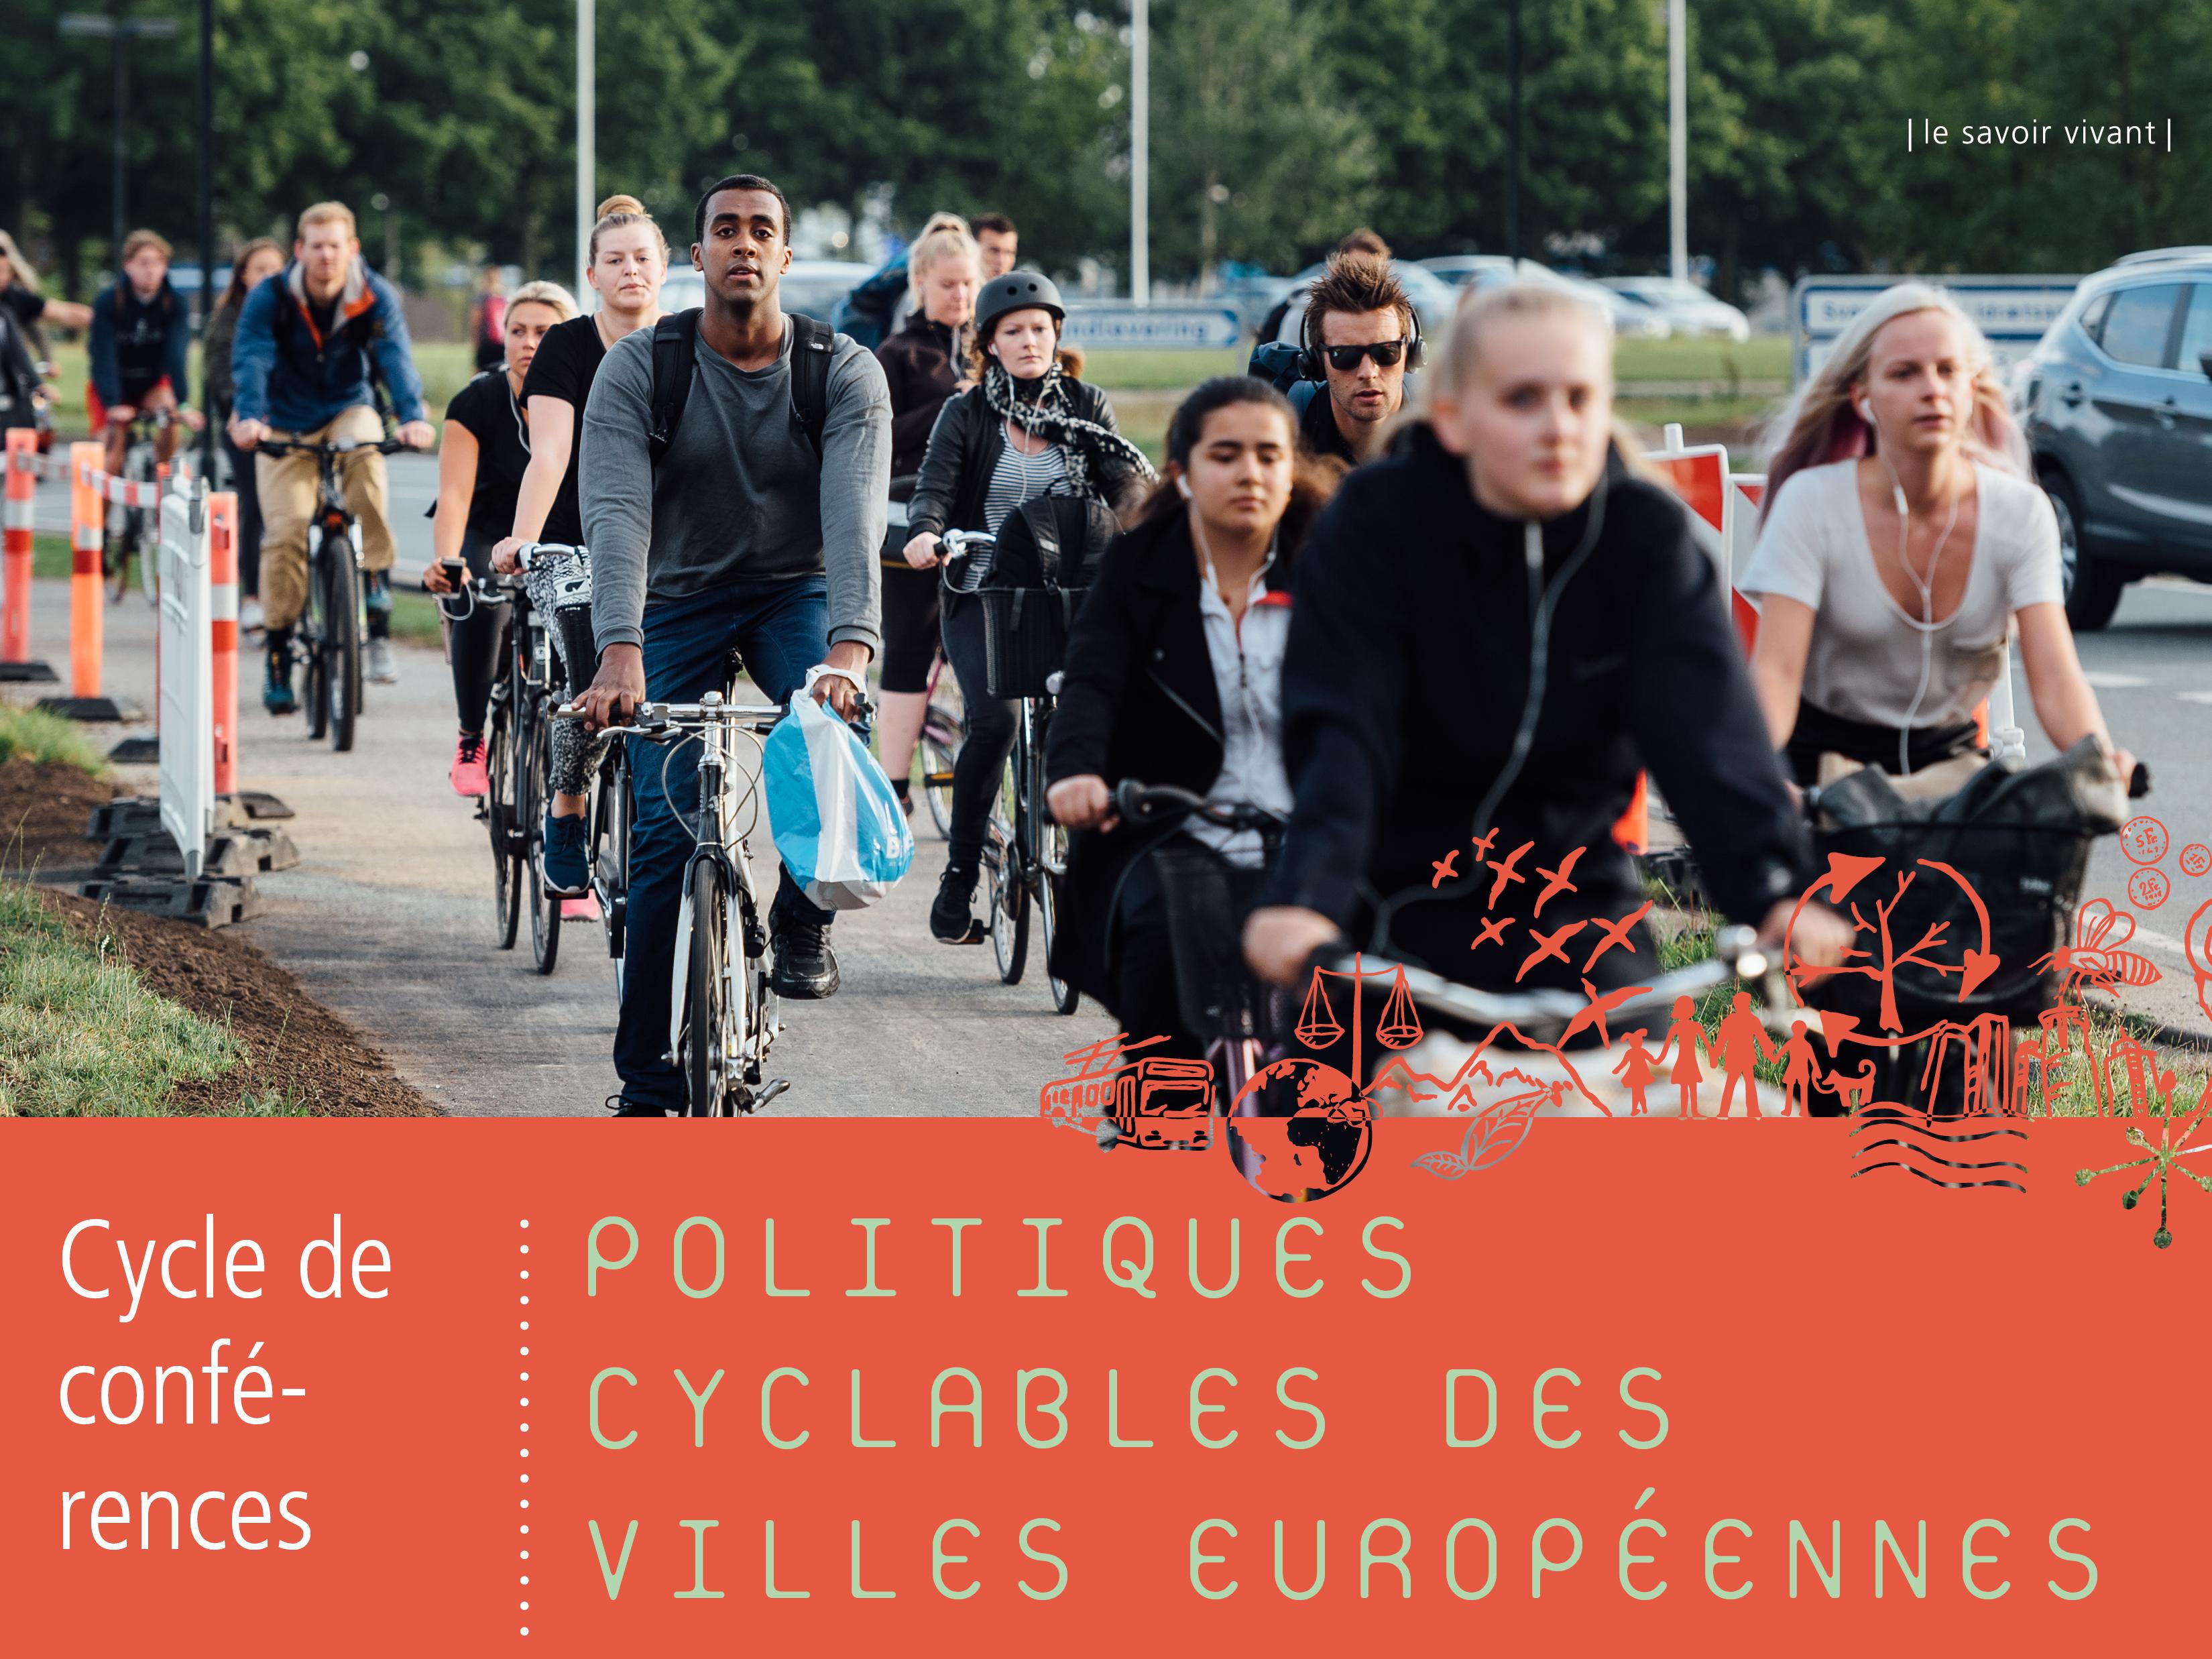 Politiques cyclables des villes européennes